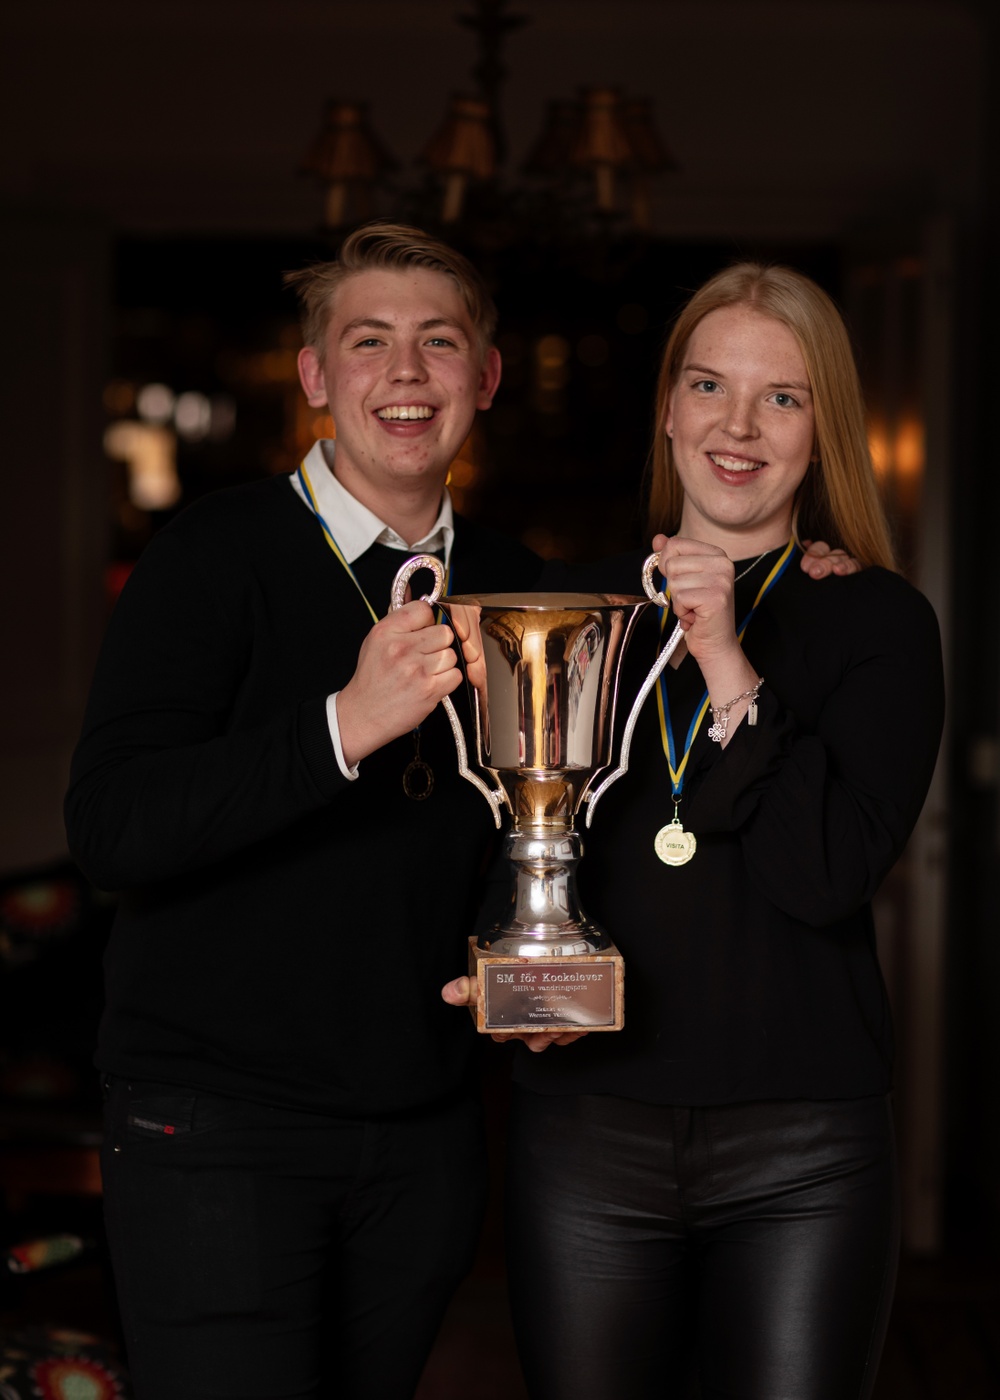 Erik Norrblom och Thilda Mårtensson, vinnare av Gymnasie-SM 2020 i kök